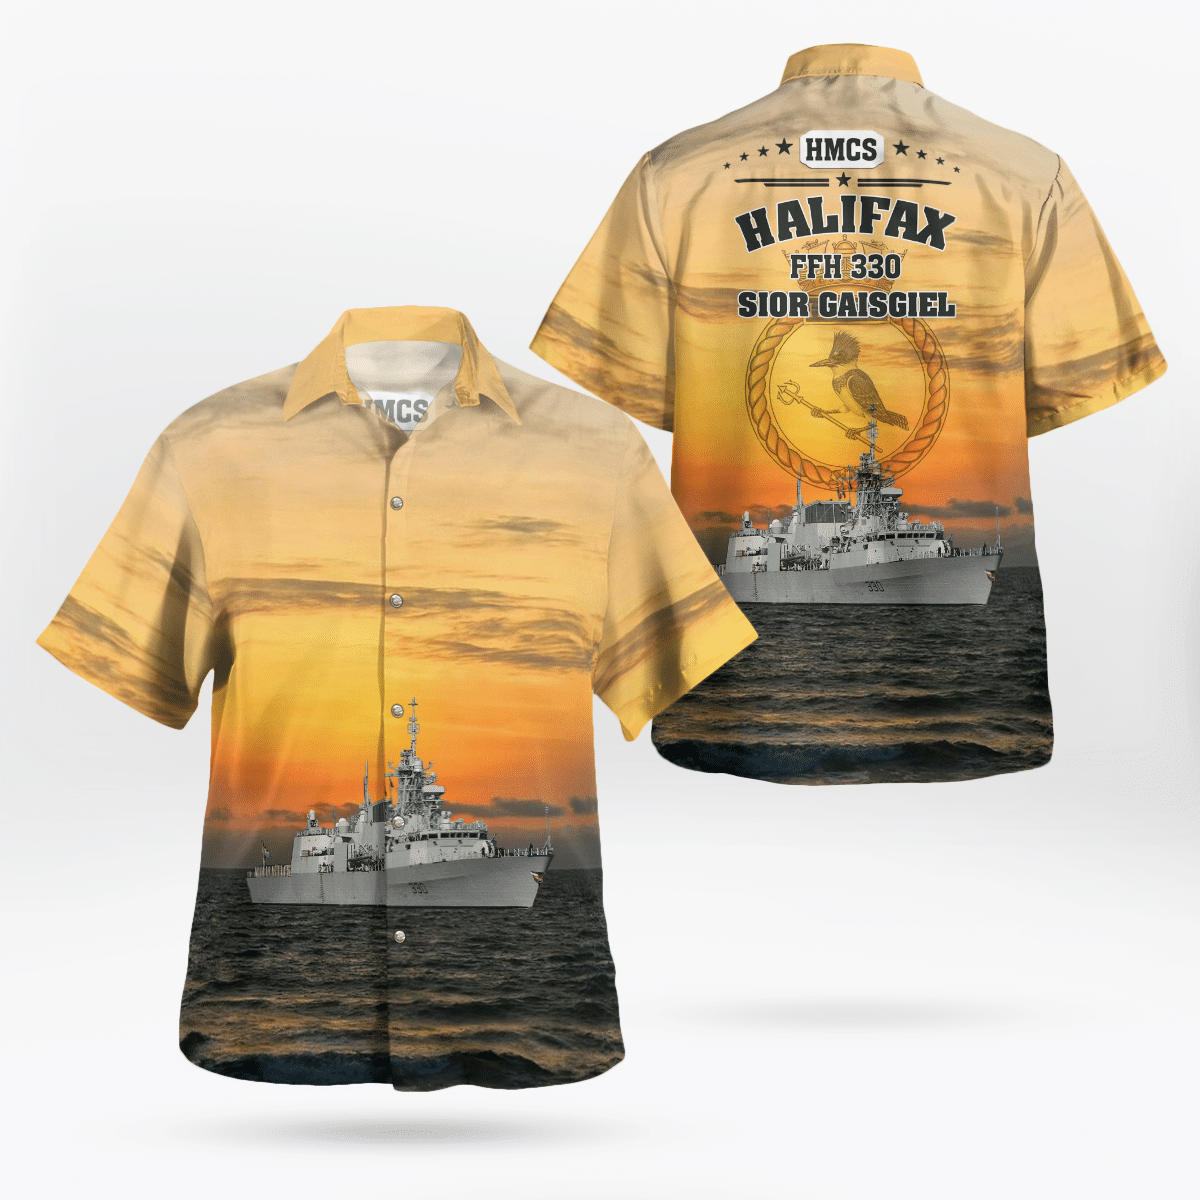 You won't regret buying these Aloha Shirt 101